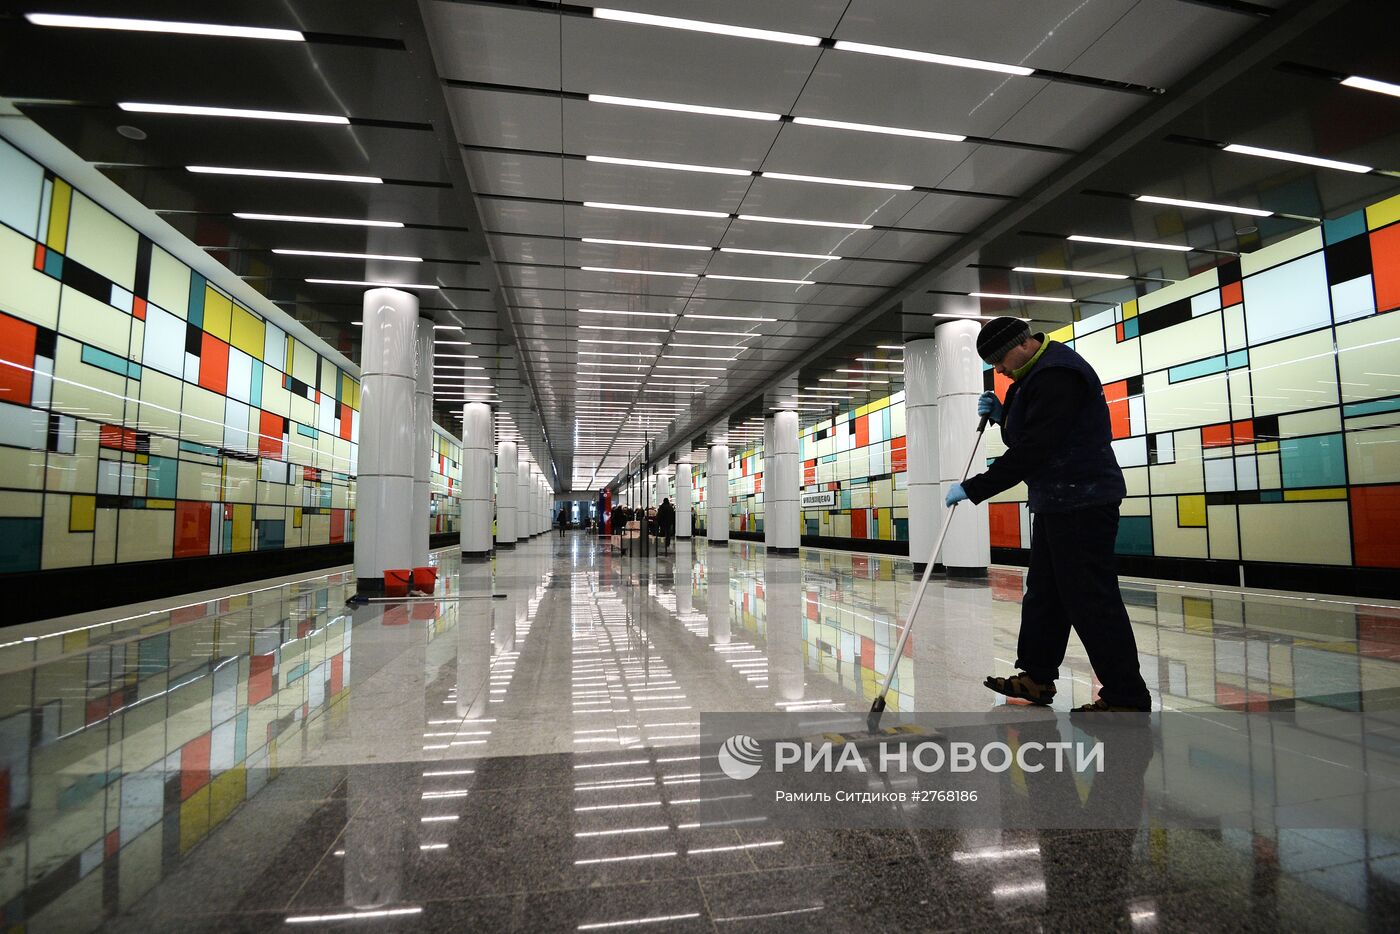 Подготовка к открытию станции метро "Румянцево"